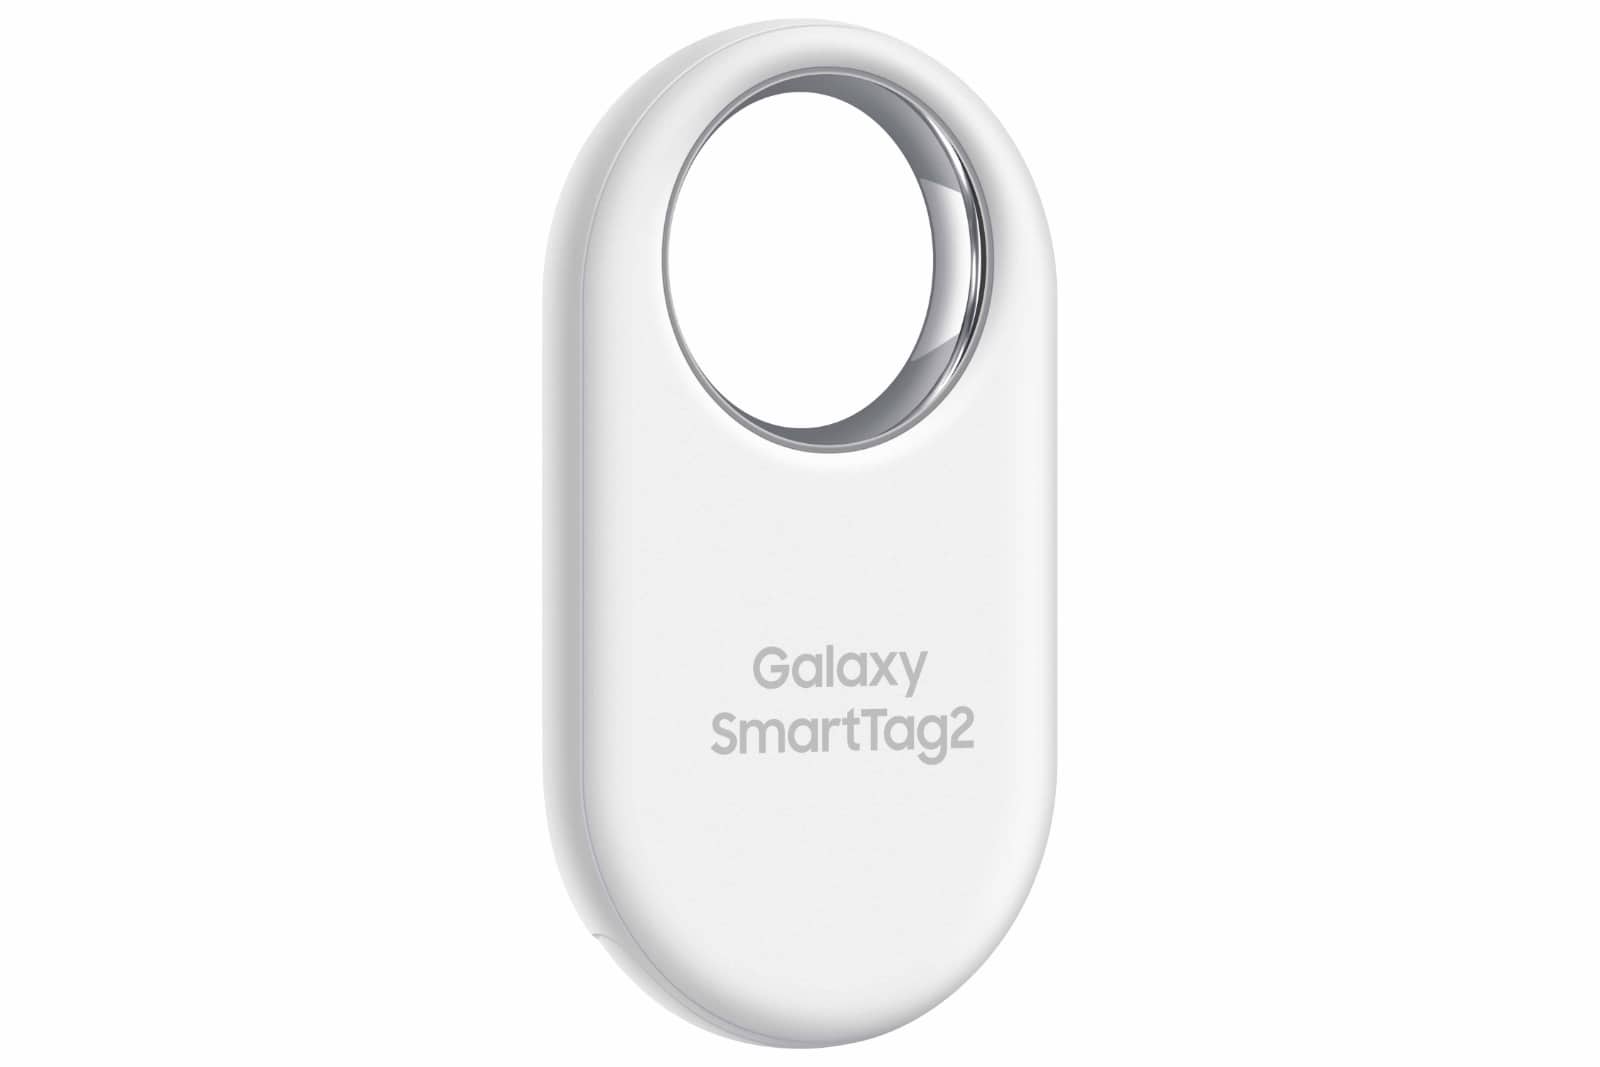 Galaxy SmartTag 2 x Apple AirTag